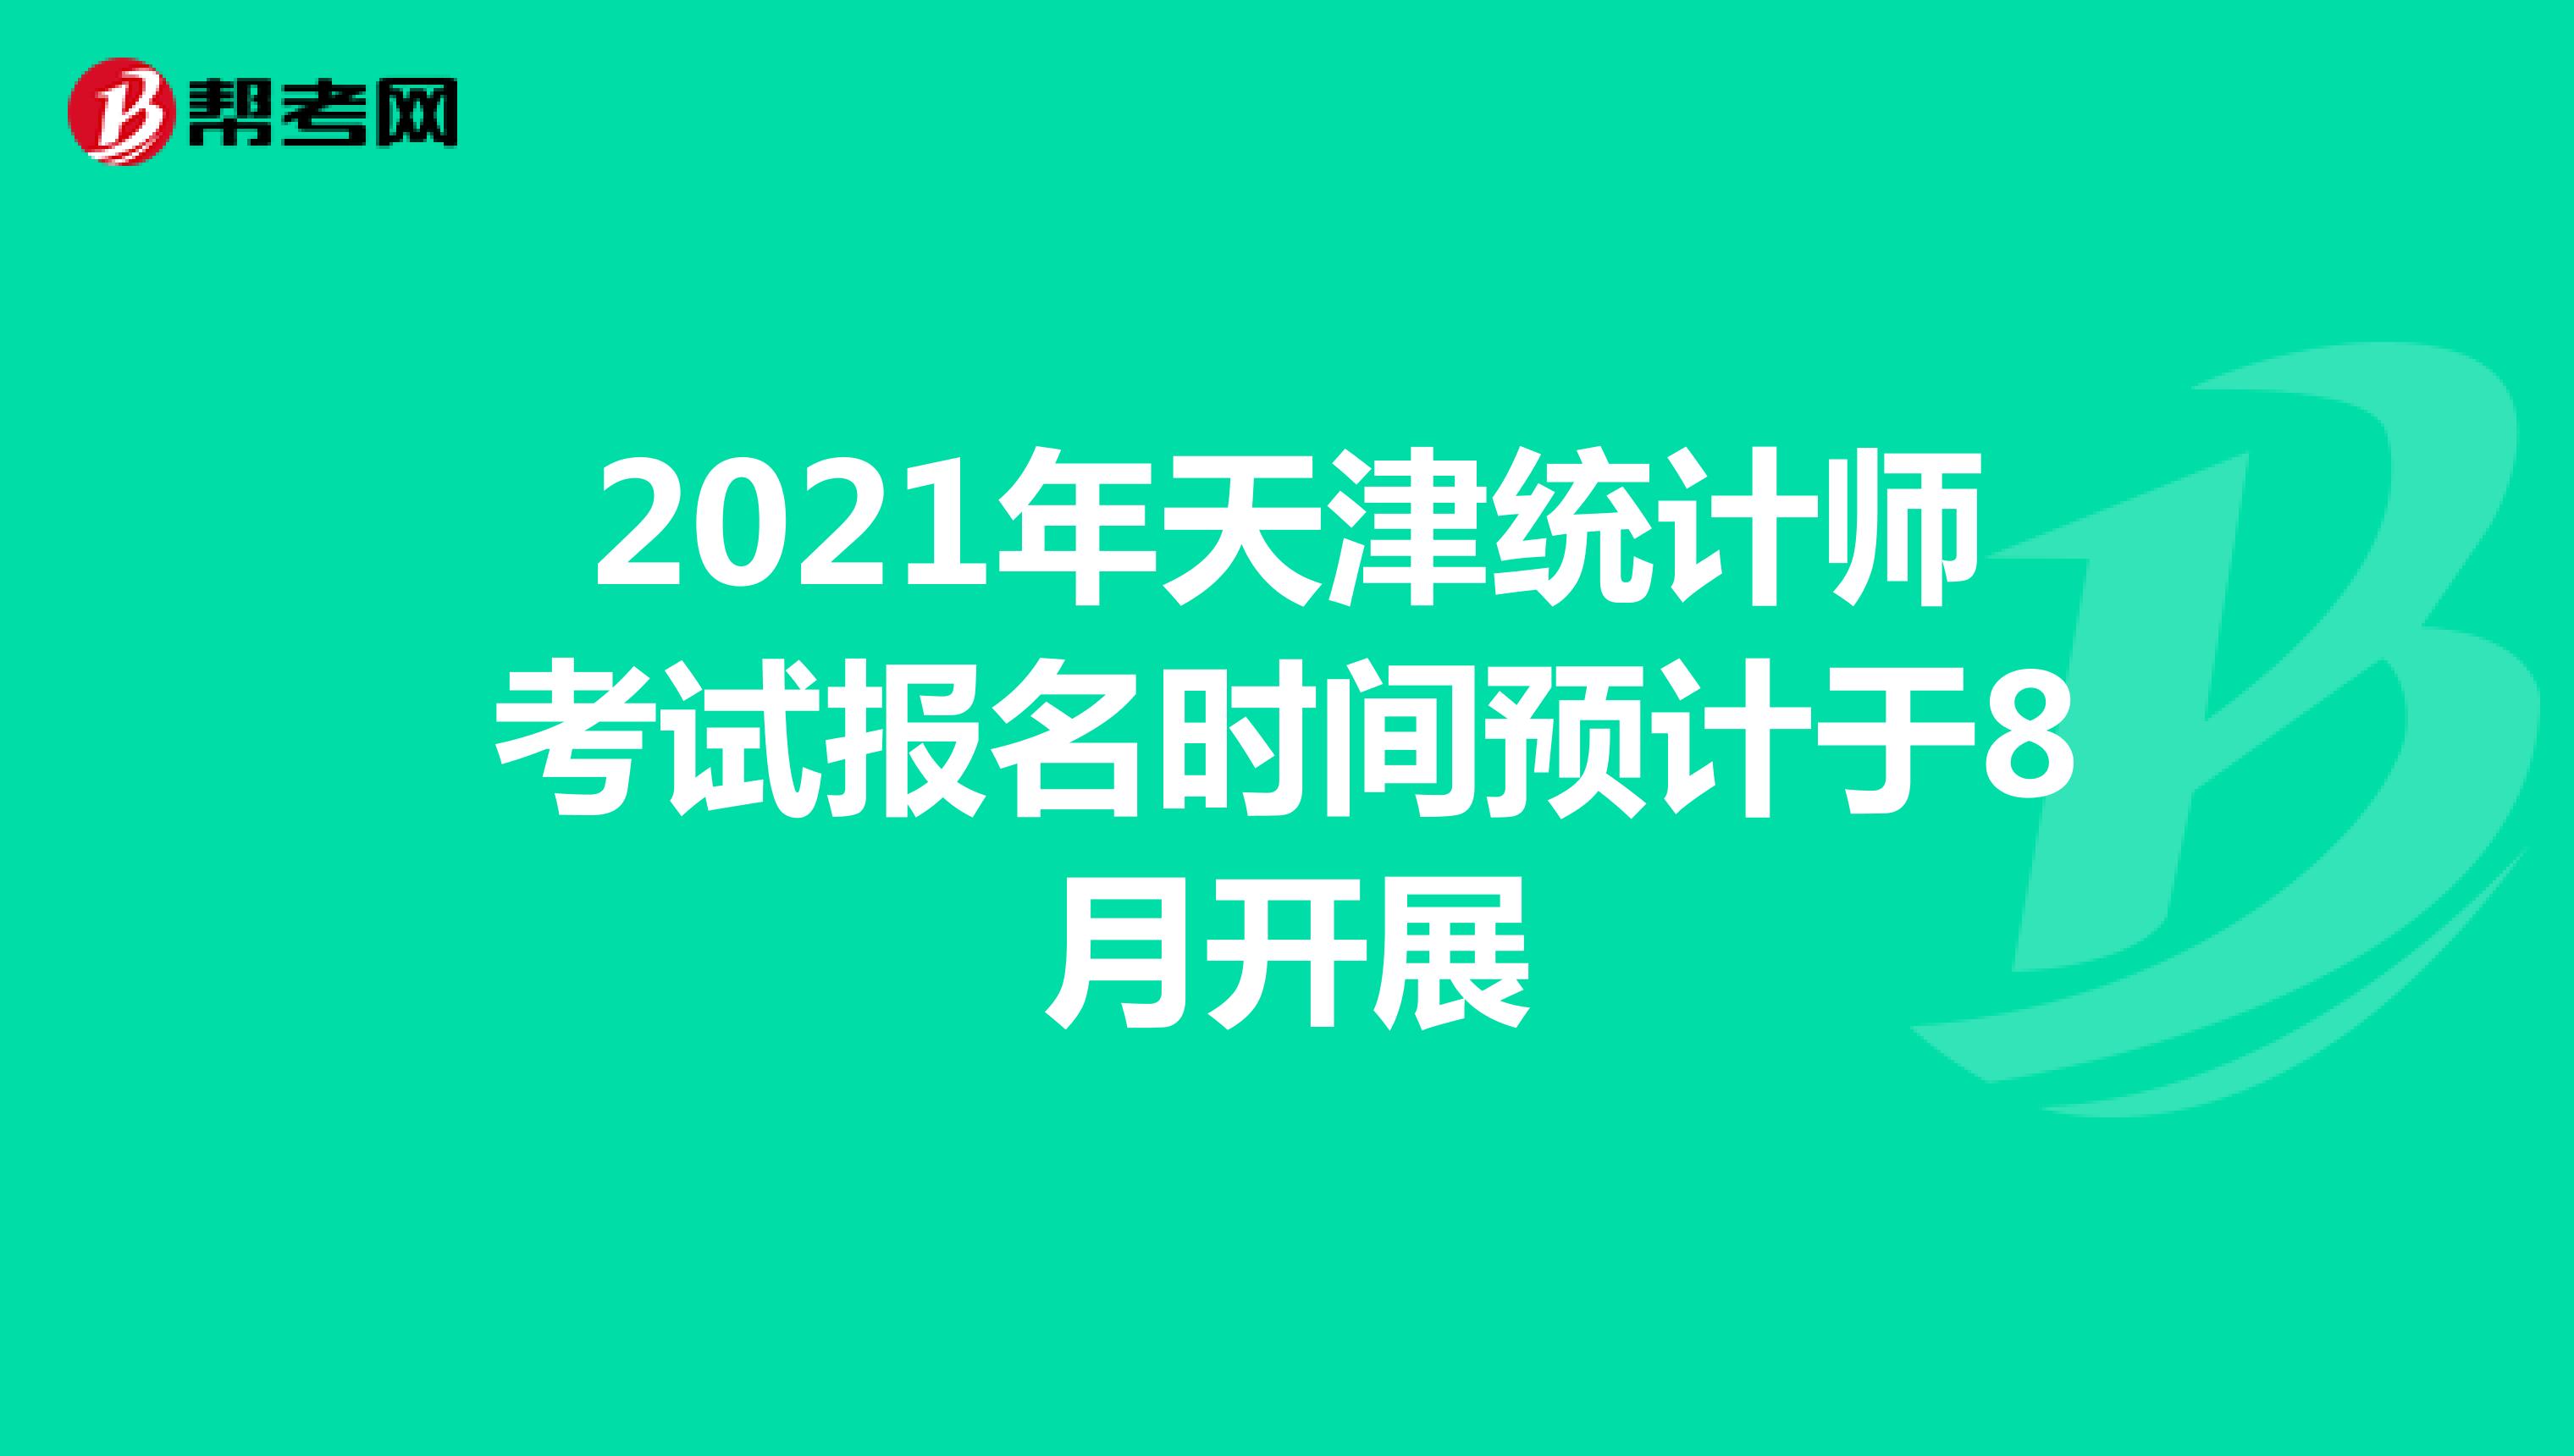 2021年天津统计师考试报名时间预计于8月开展